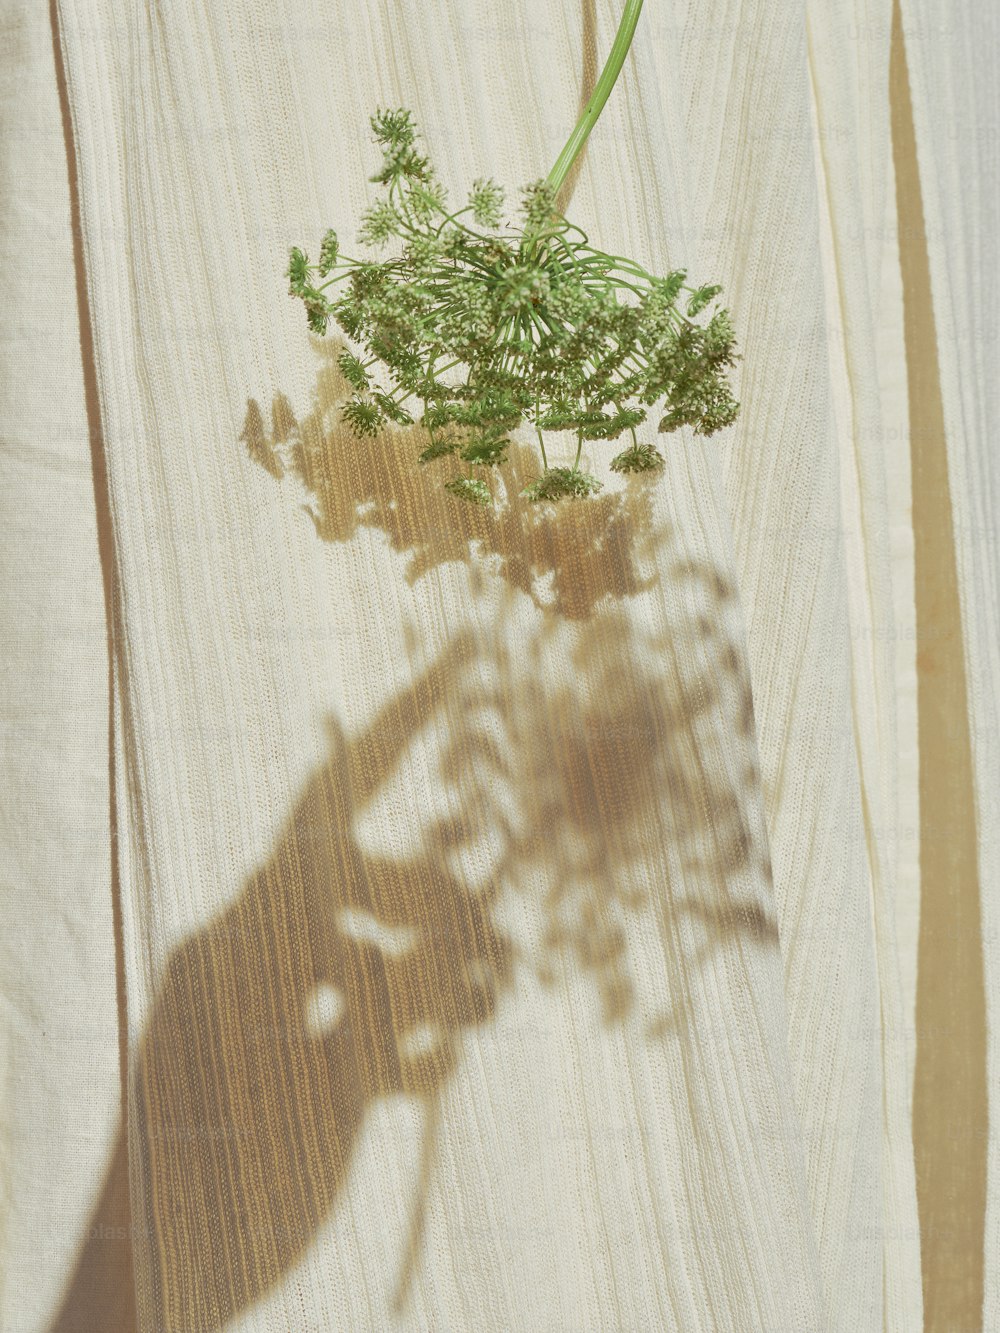 Schatten einer Pflanze auf einer Holzoberfläche